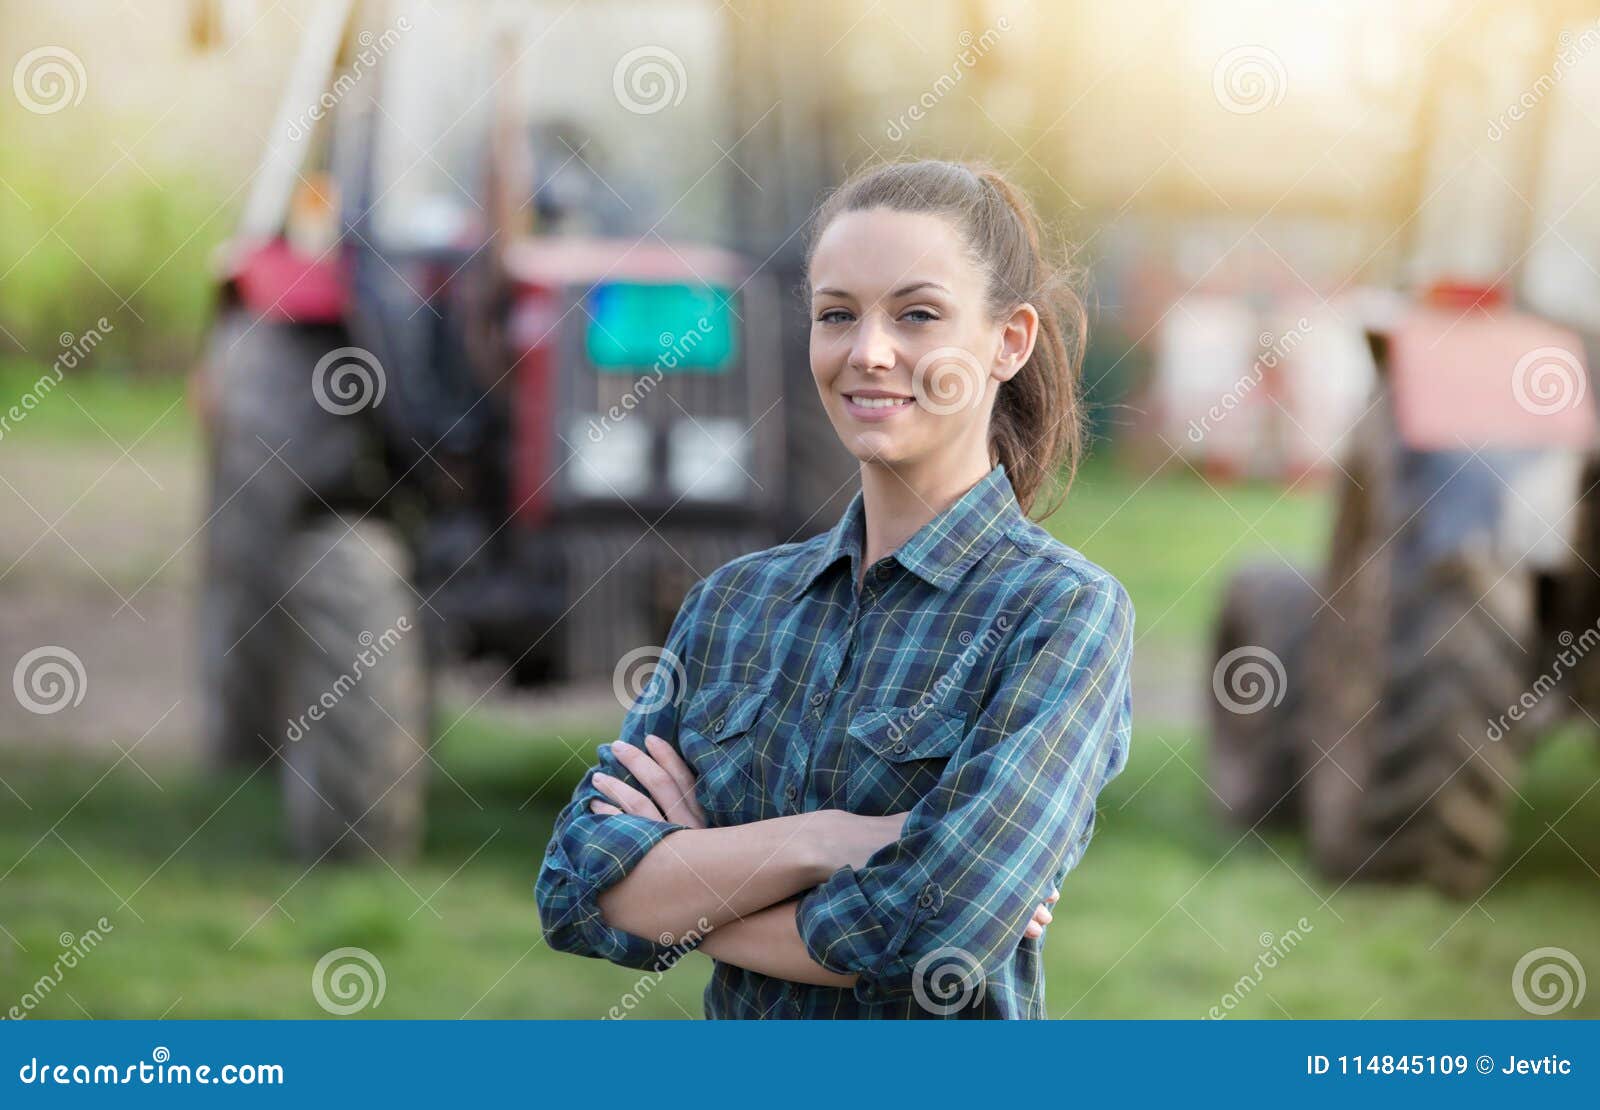 farmer woman with tractors on farmland